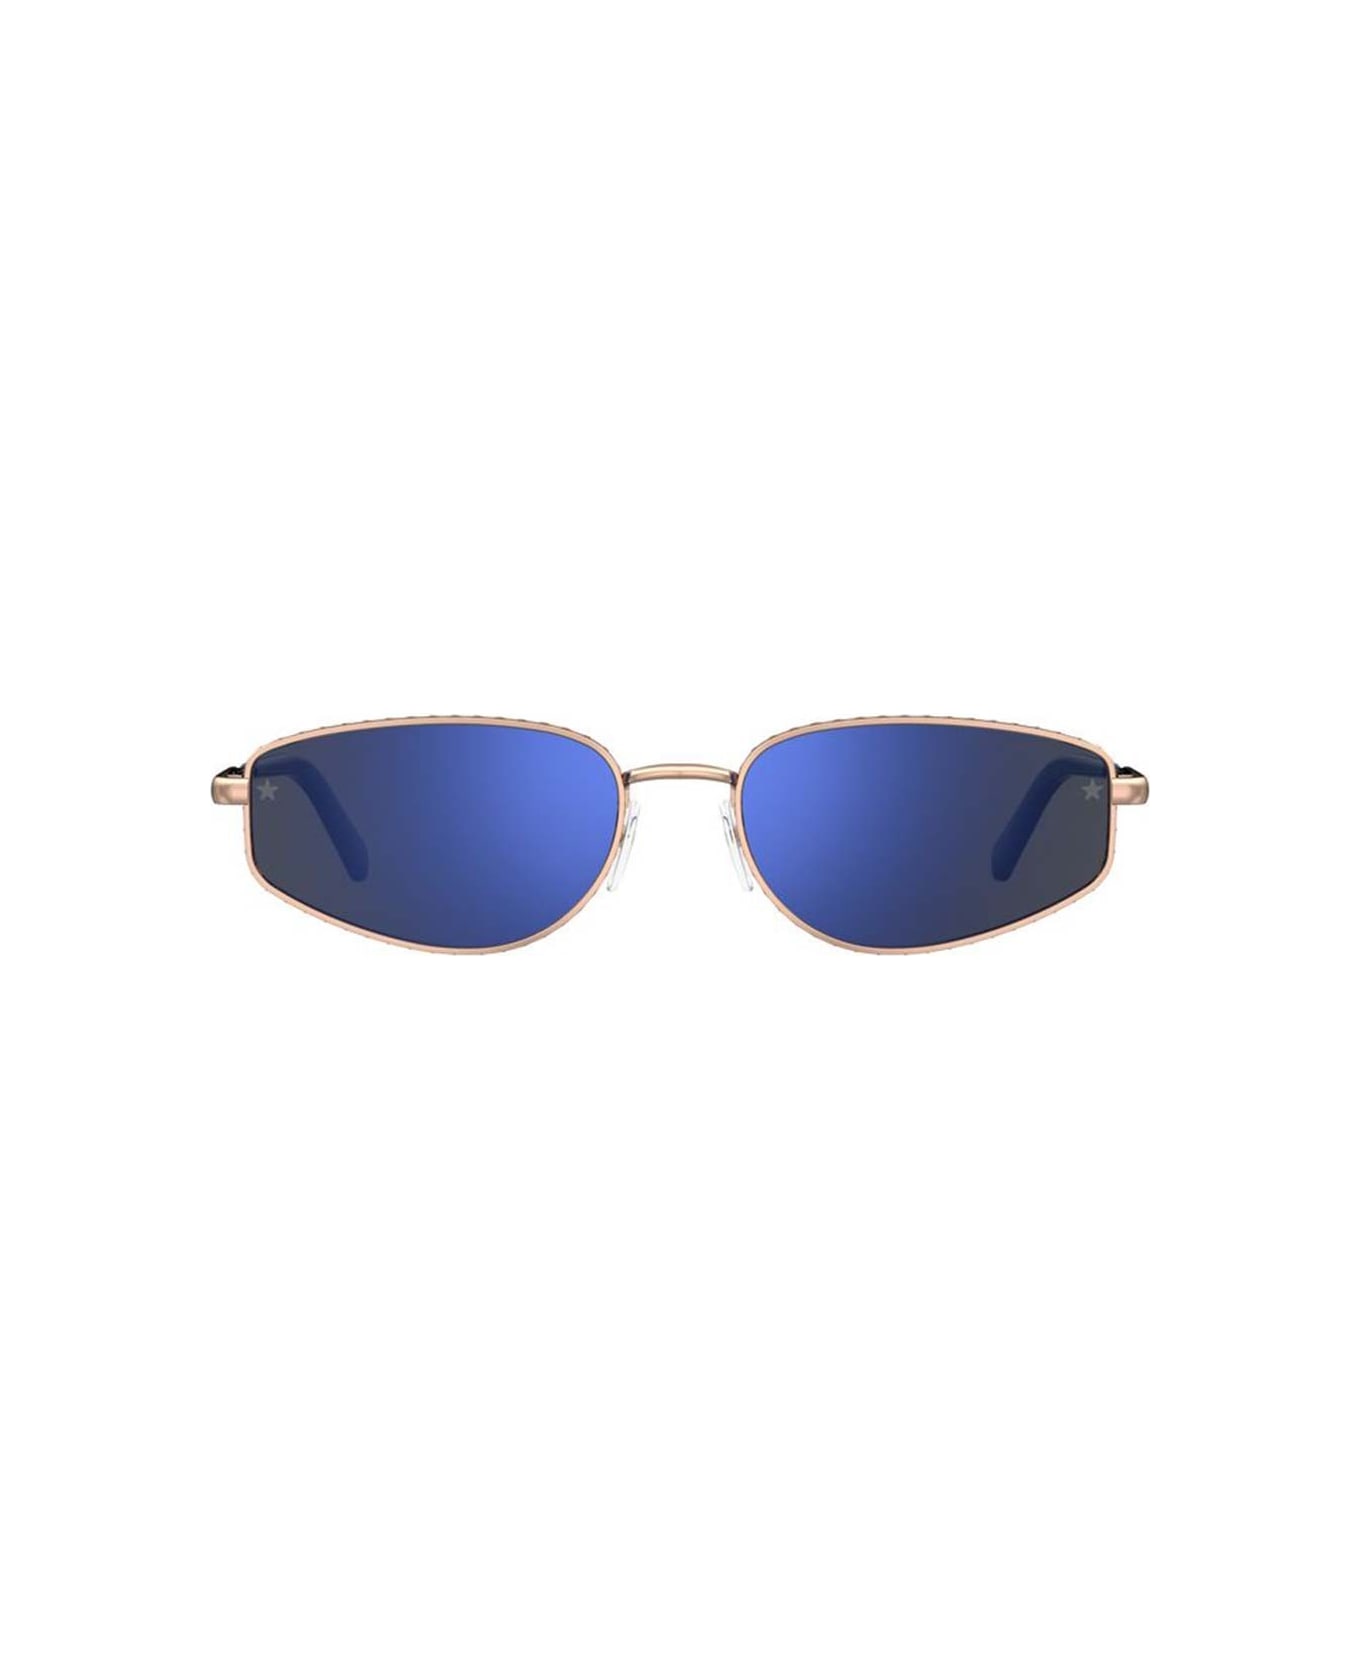 Chiara Ferragni Sunglasses - Oro/Blu